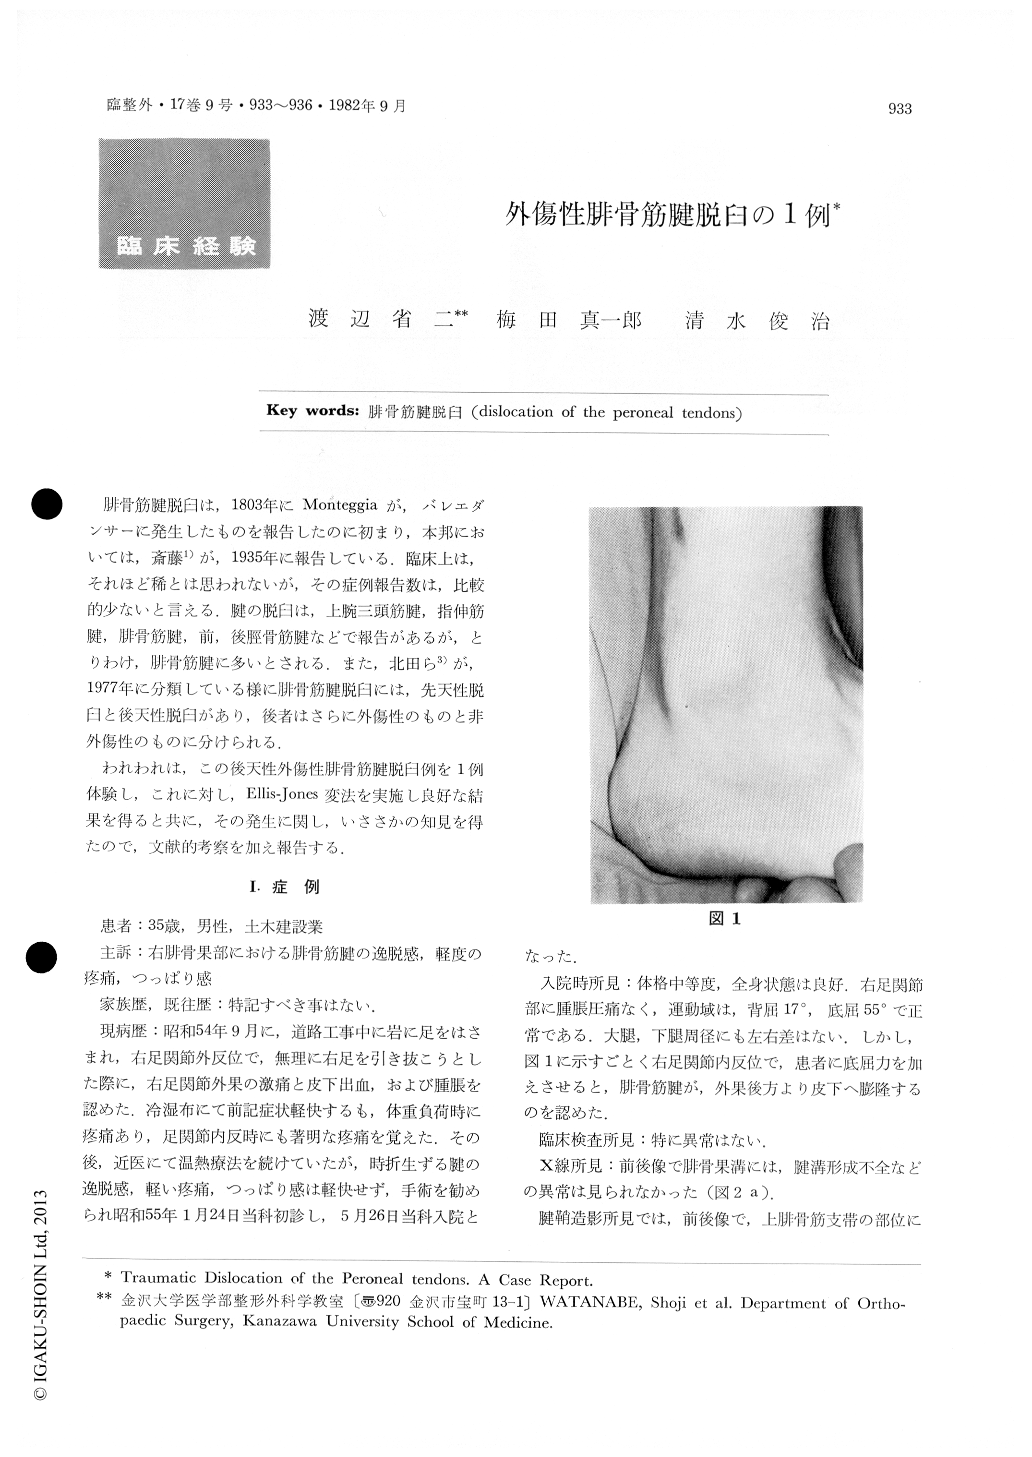 外傷性腓骨筋腱脱臼の1例 臨床整形外科 17巻9号 医書 Jp